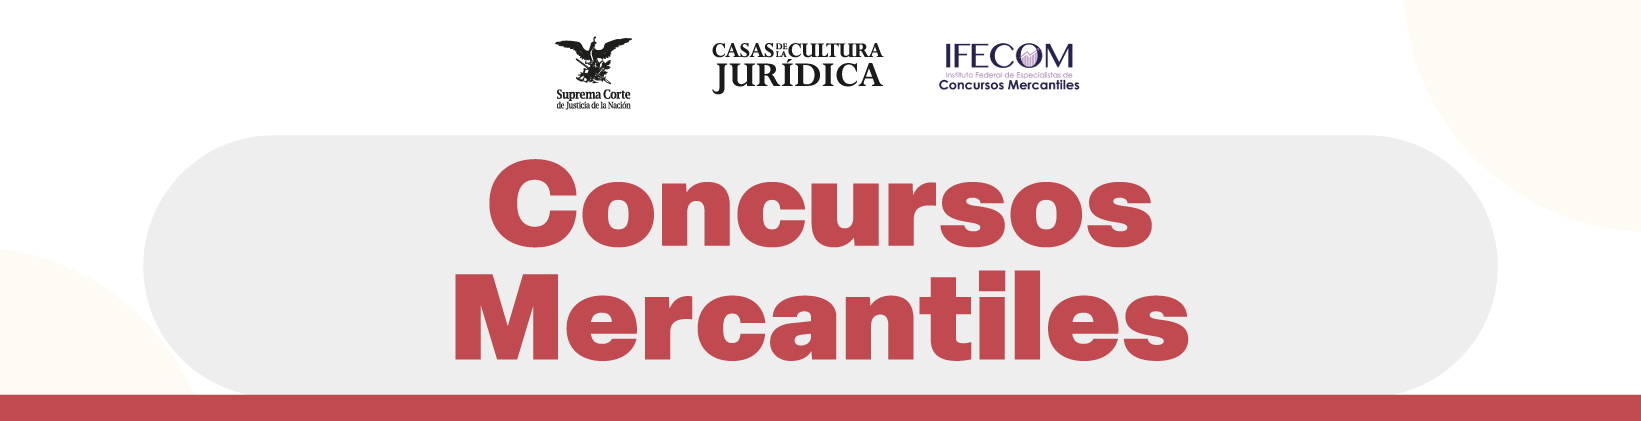 Banner de Concursos Mercantiles